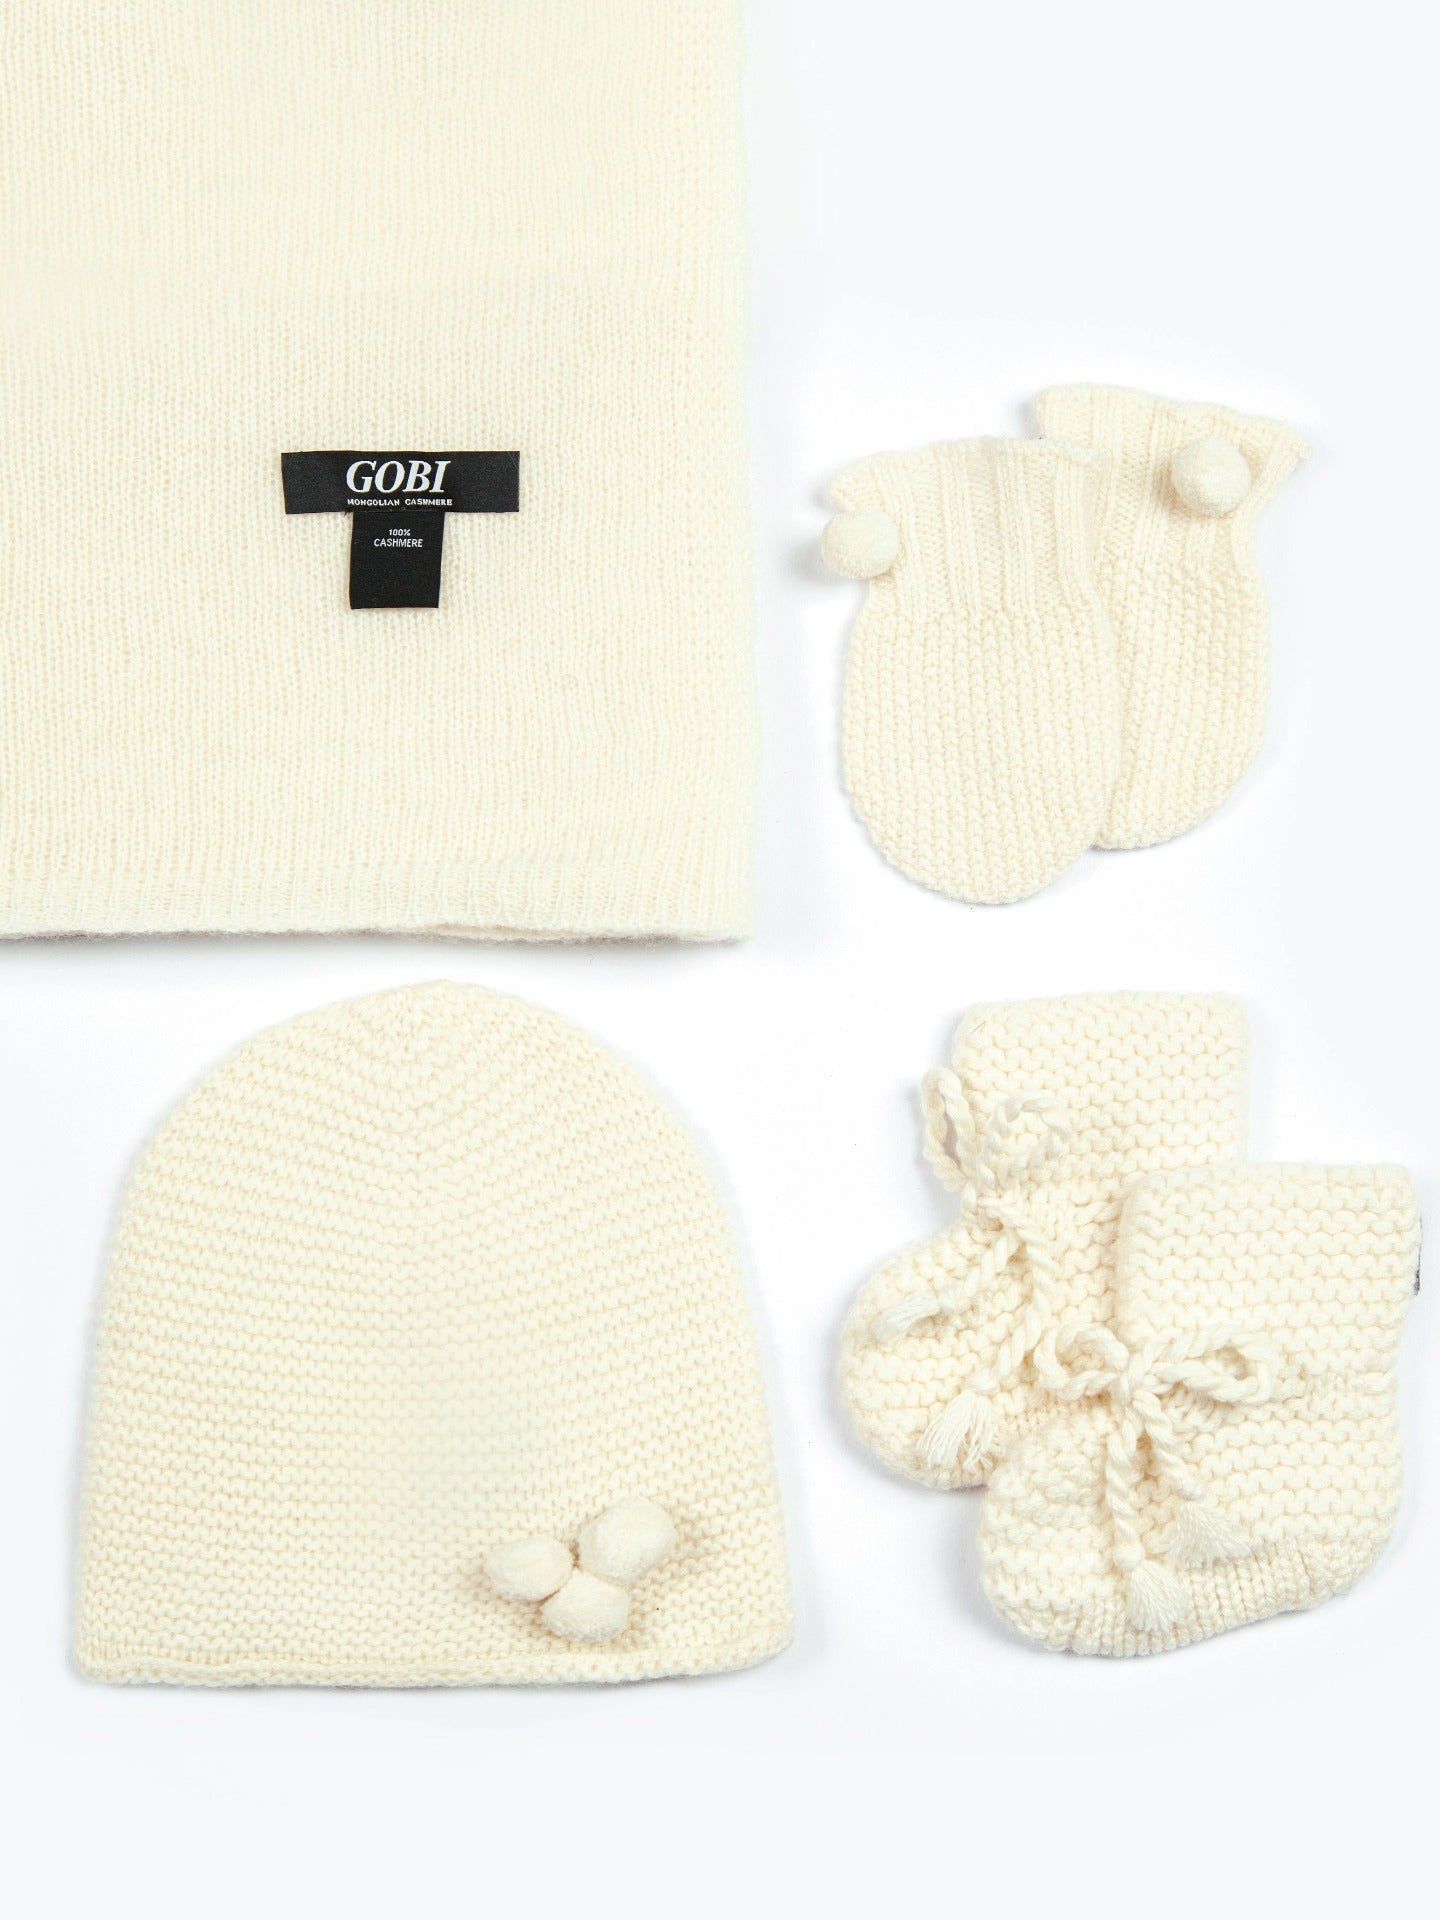 Unisex Cashmere Baby Set White - Gobi Cashmere